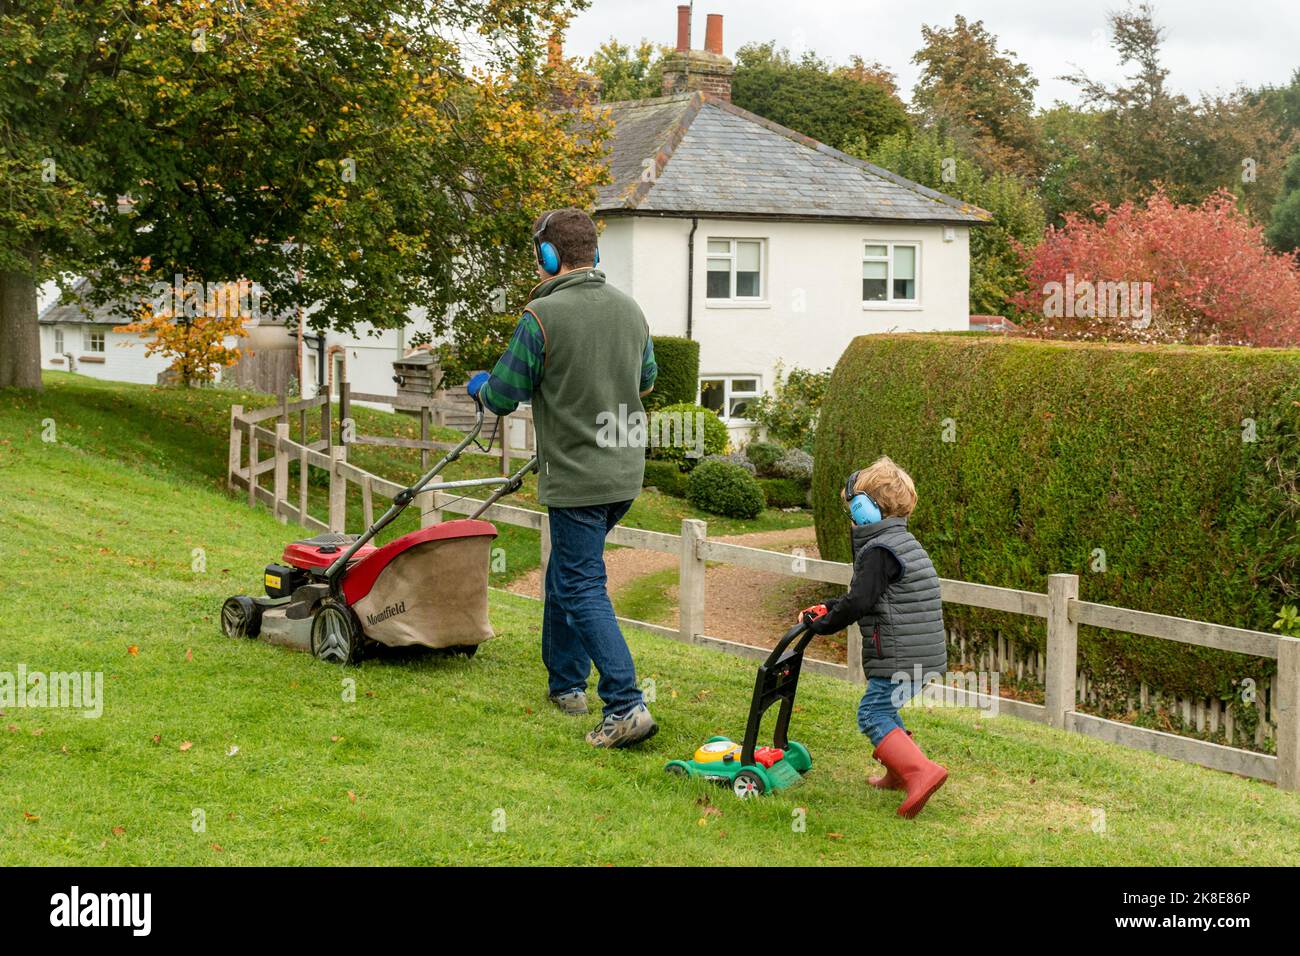 Padre e figlio che falciano l'erba, il ragazzo carino che spinge un rasaerba giocattolo indossando cuffie che imitano e seguono il suo papà, Regno Unito Foto Stock